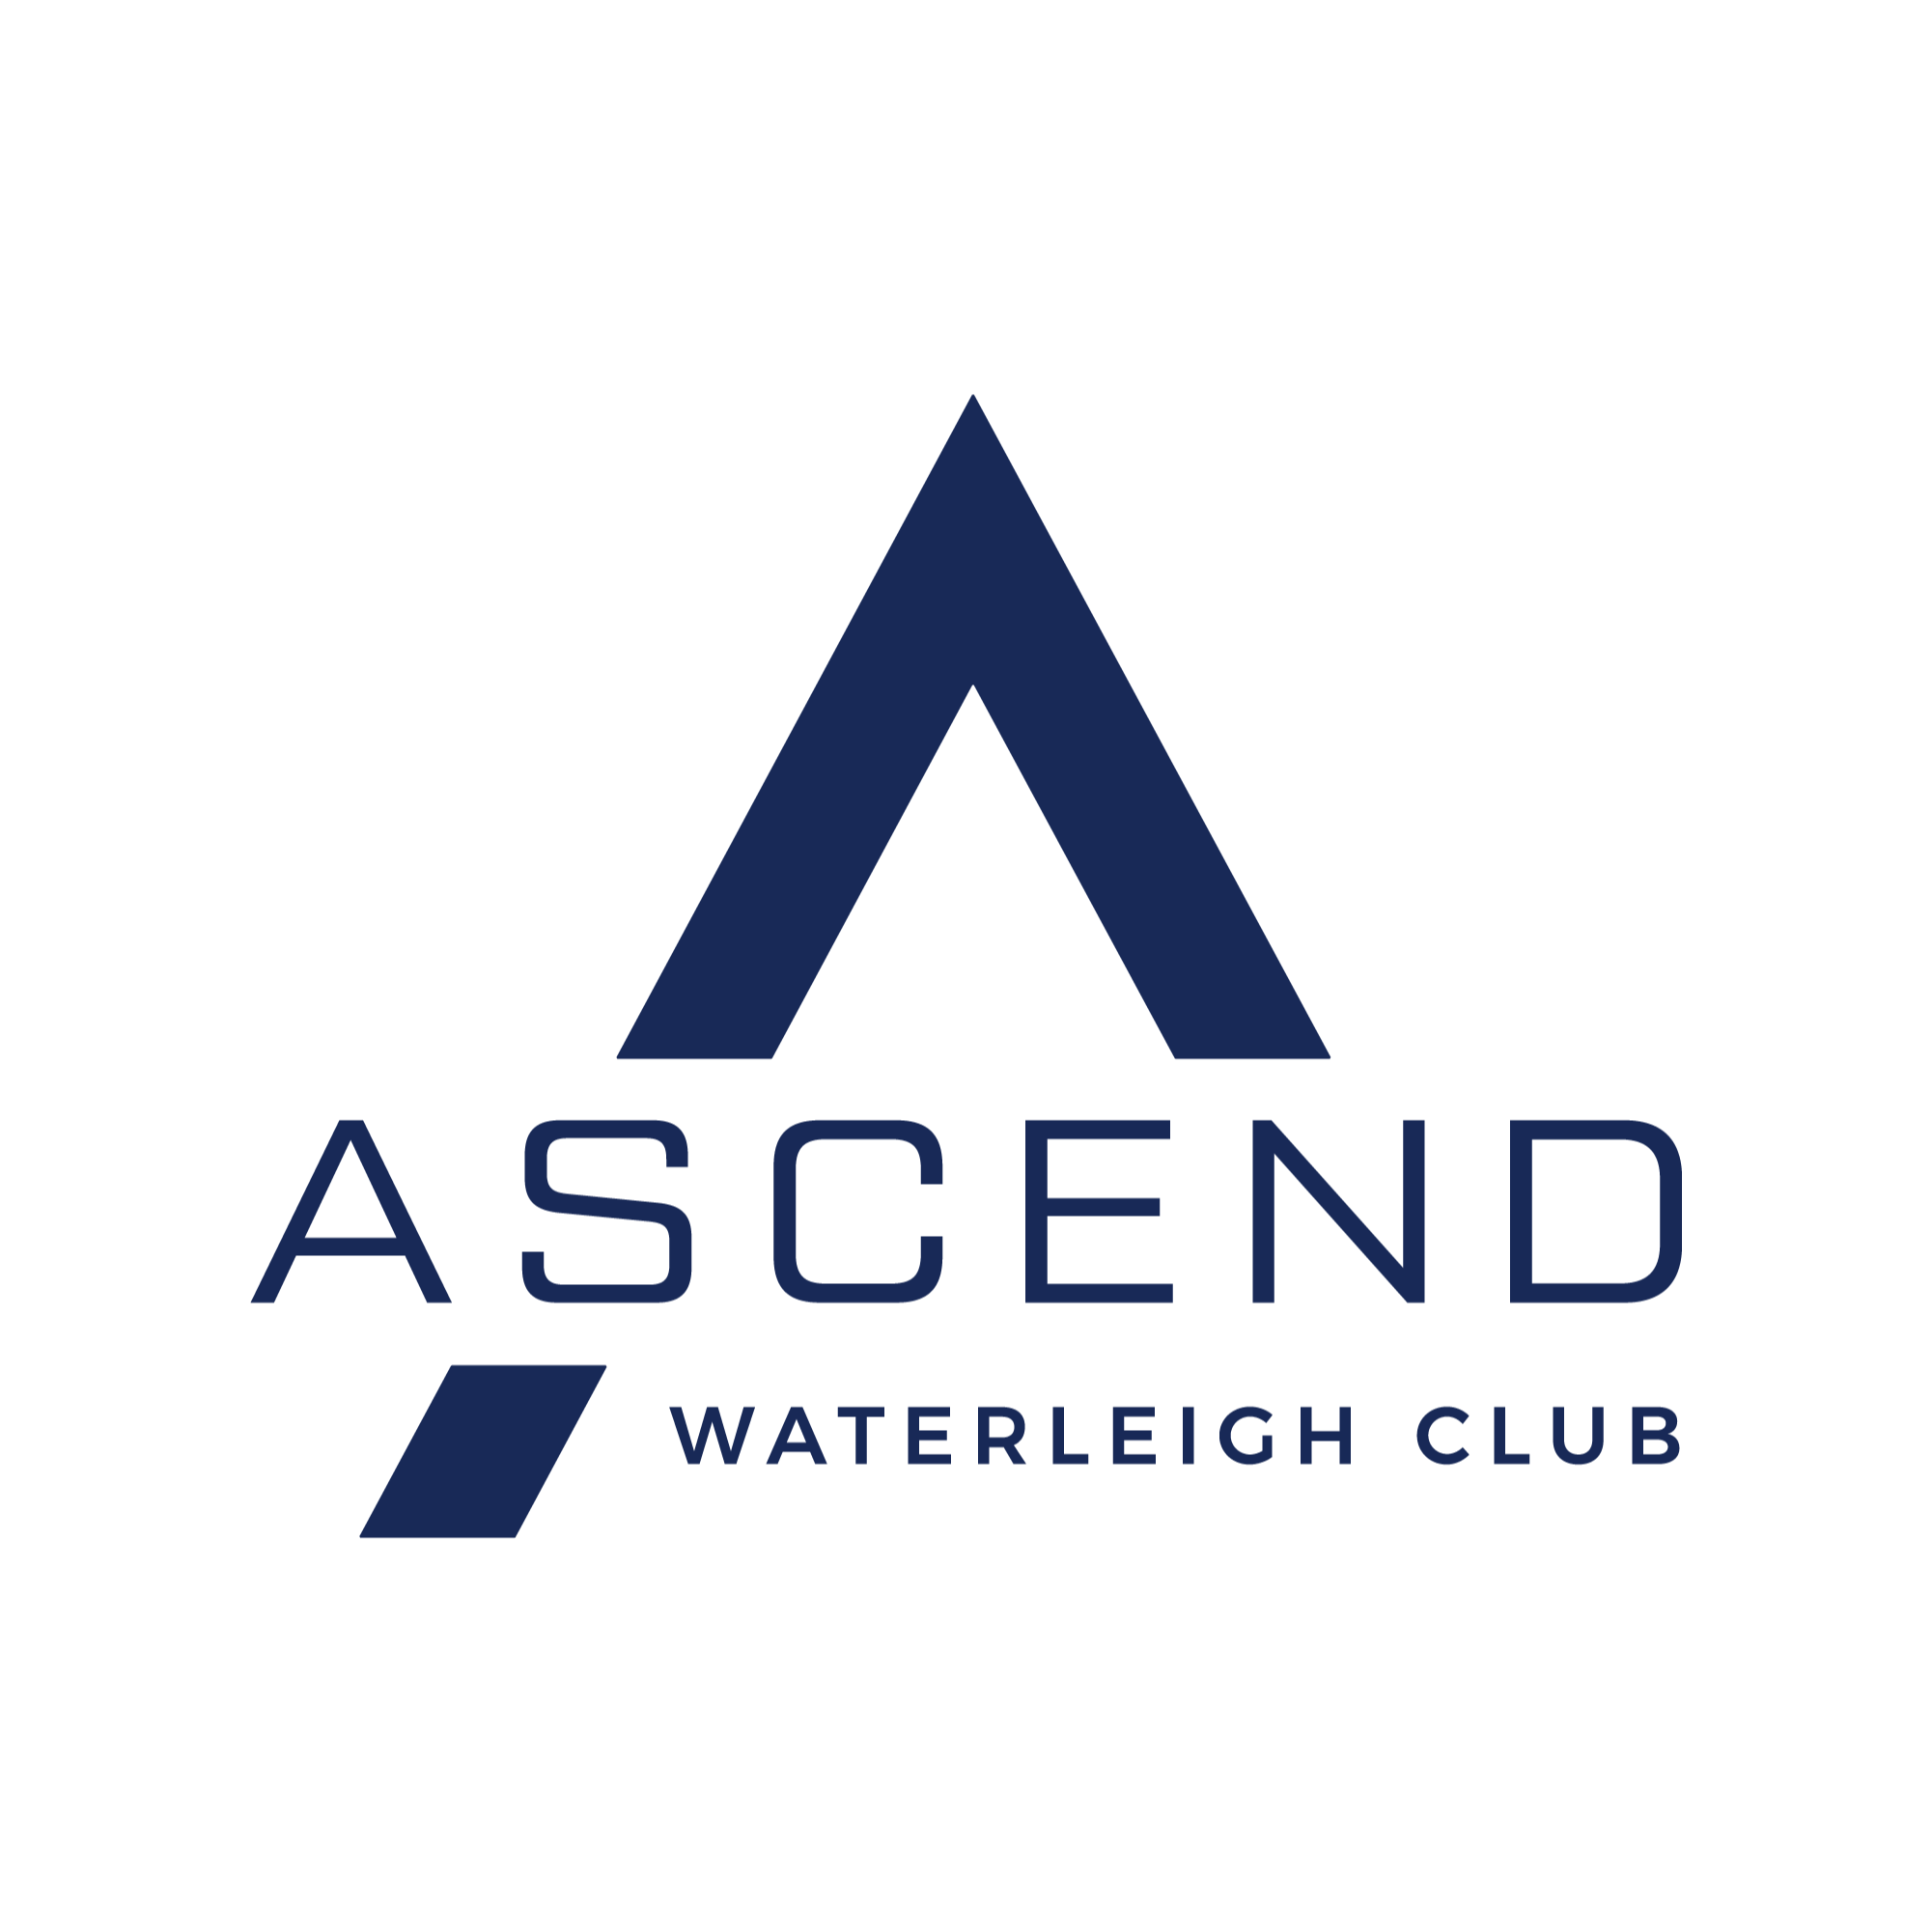 Ascend Waterleigh Club